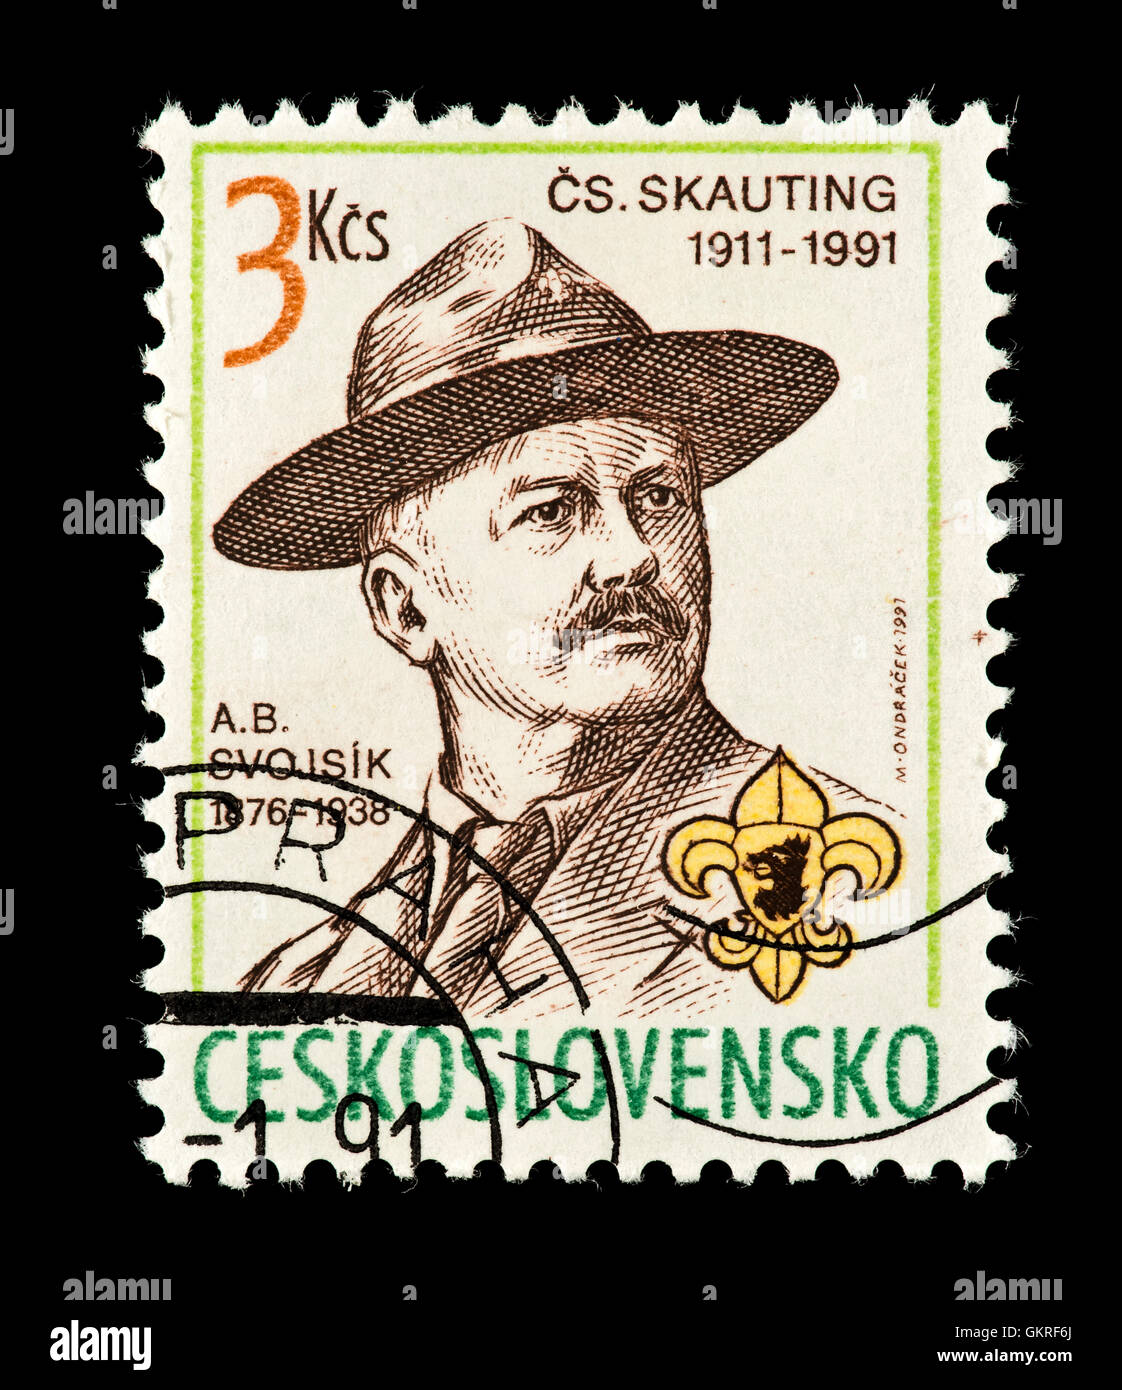 Timbre-poste de la Tchécoslovaquie représentant A. B. Svojsik tchèque, fondateur du Scoutisme. Banque D'Images